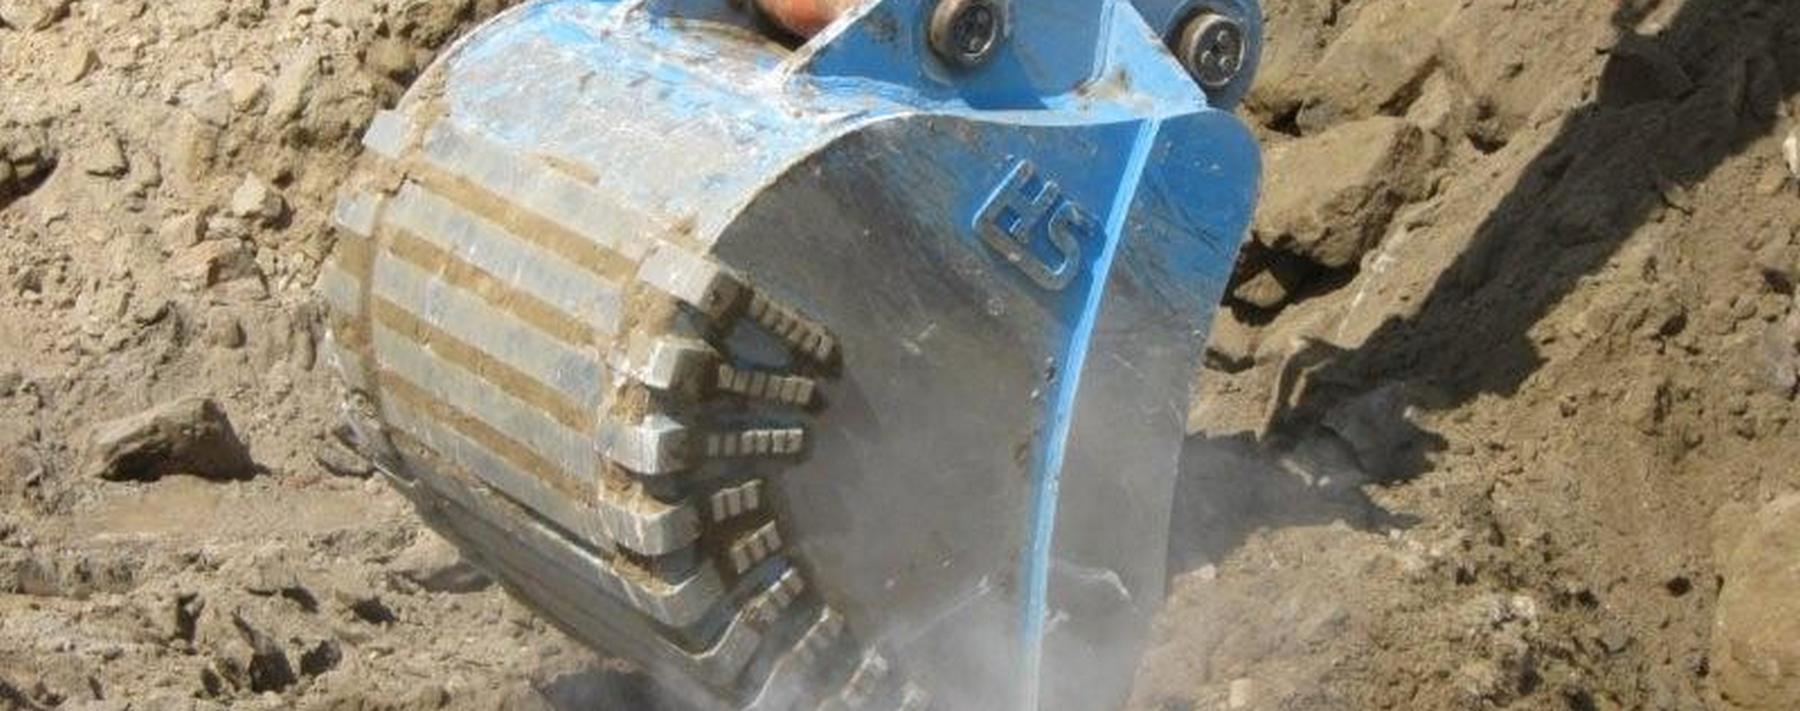 Backhoe hydraulic bucket excavator